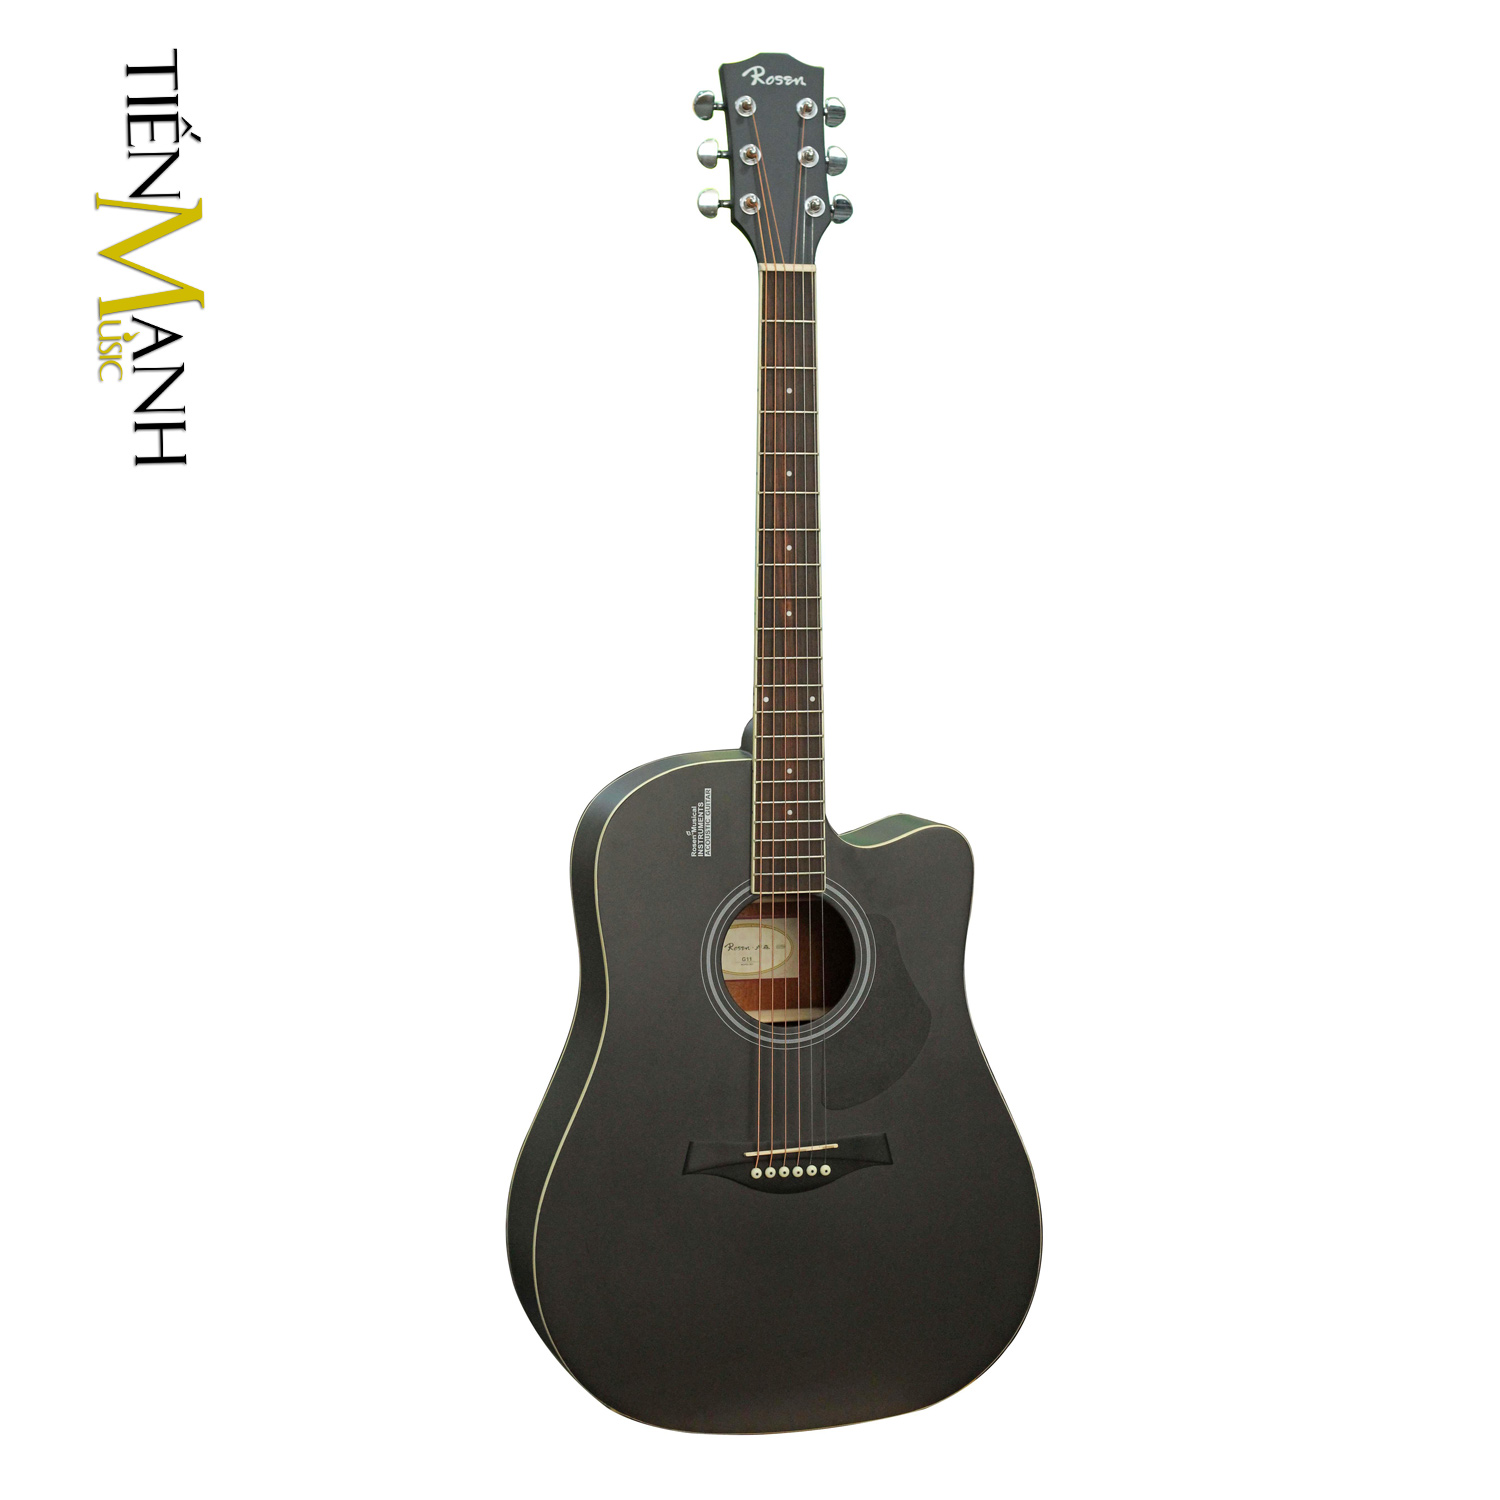 Than-Dan-Guitar-Acoustic-Rosen-G11-Dang-D-mau-đen.jpg